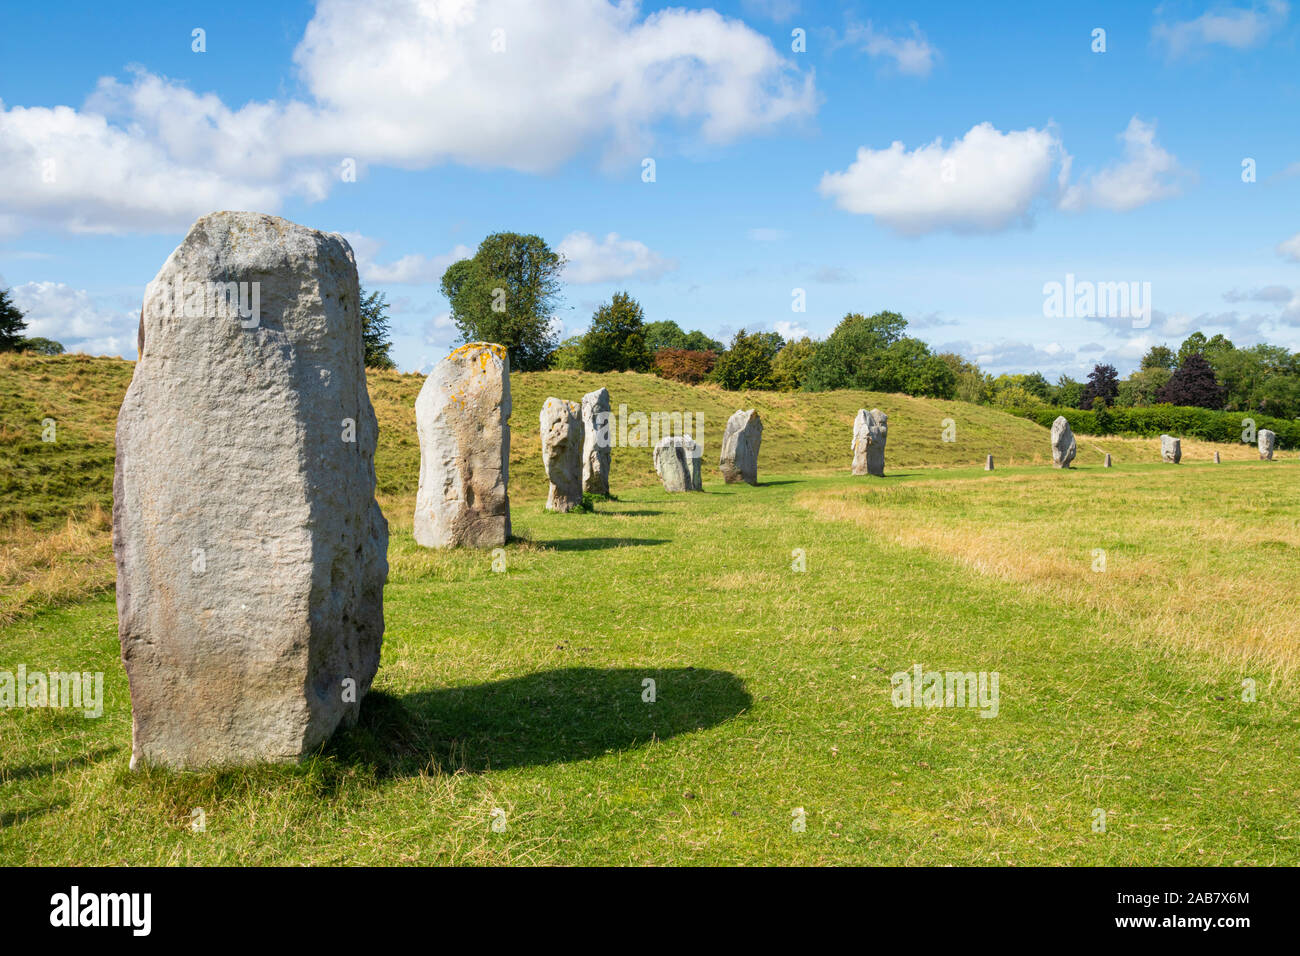 Pierres à Avebury Stone Circle, le cercle de pierres néolithiques, UNESCO World Heritage Site, Avebury, Wiltshire, Angleterre, Royaume-Uni, Europe Banque D'Images